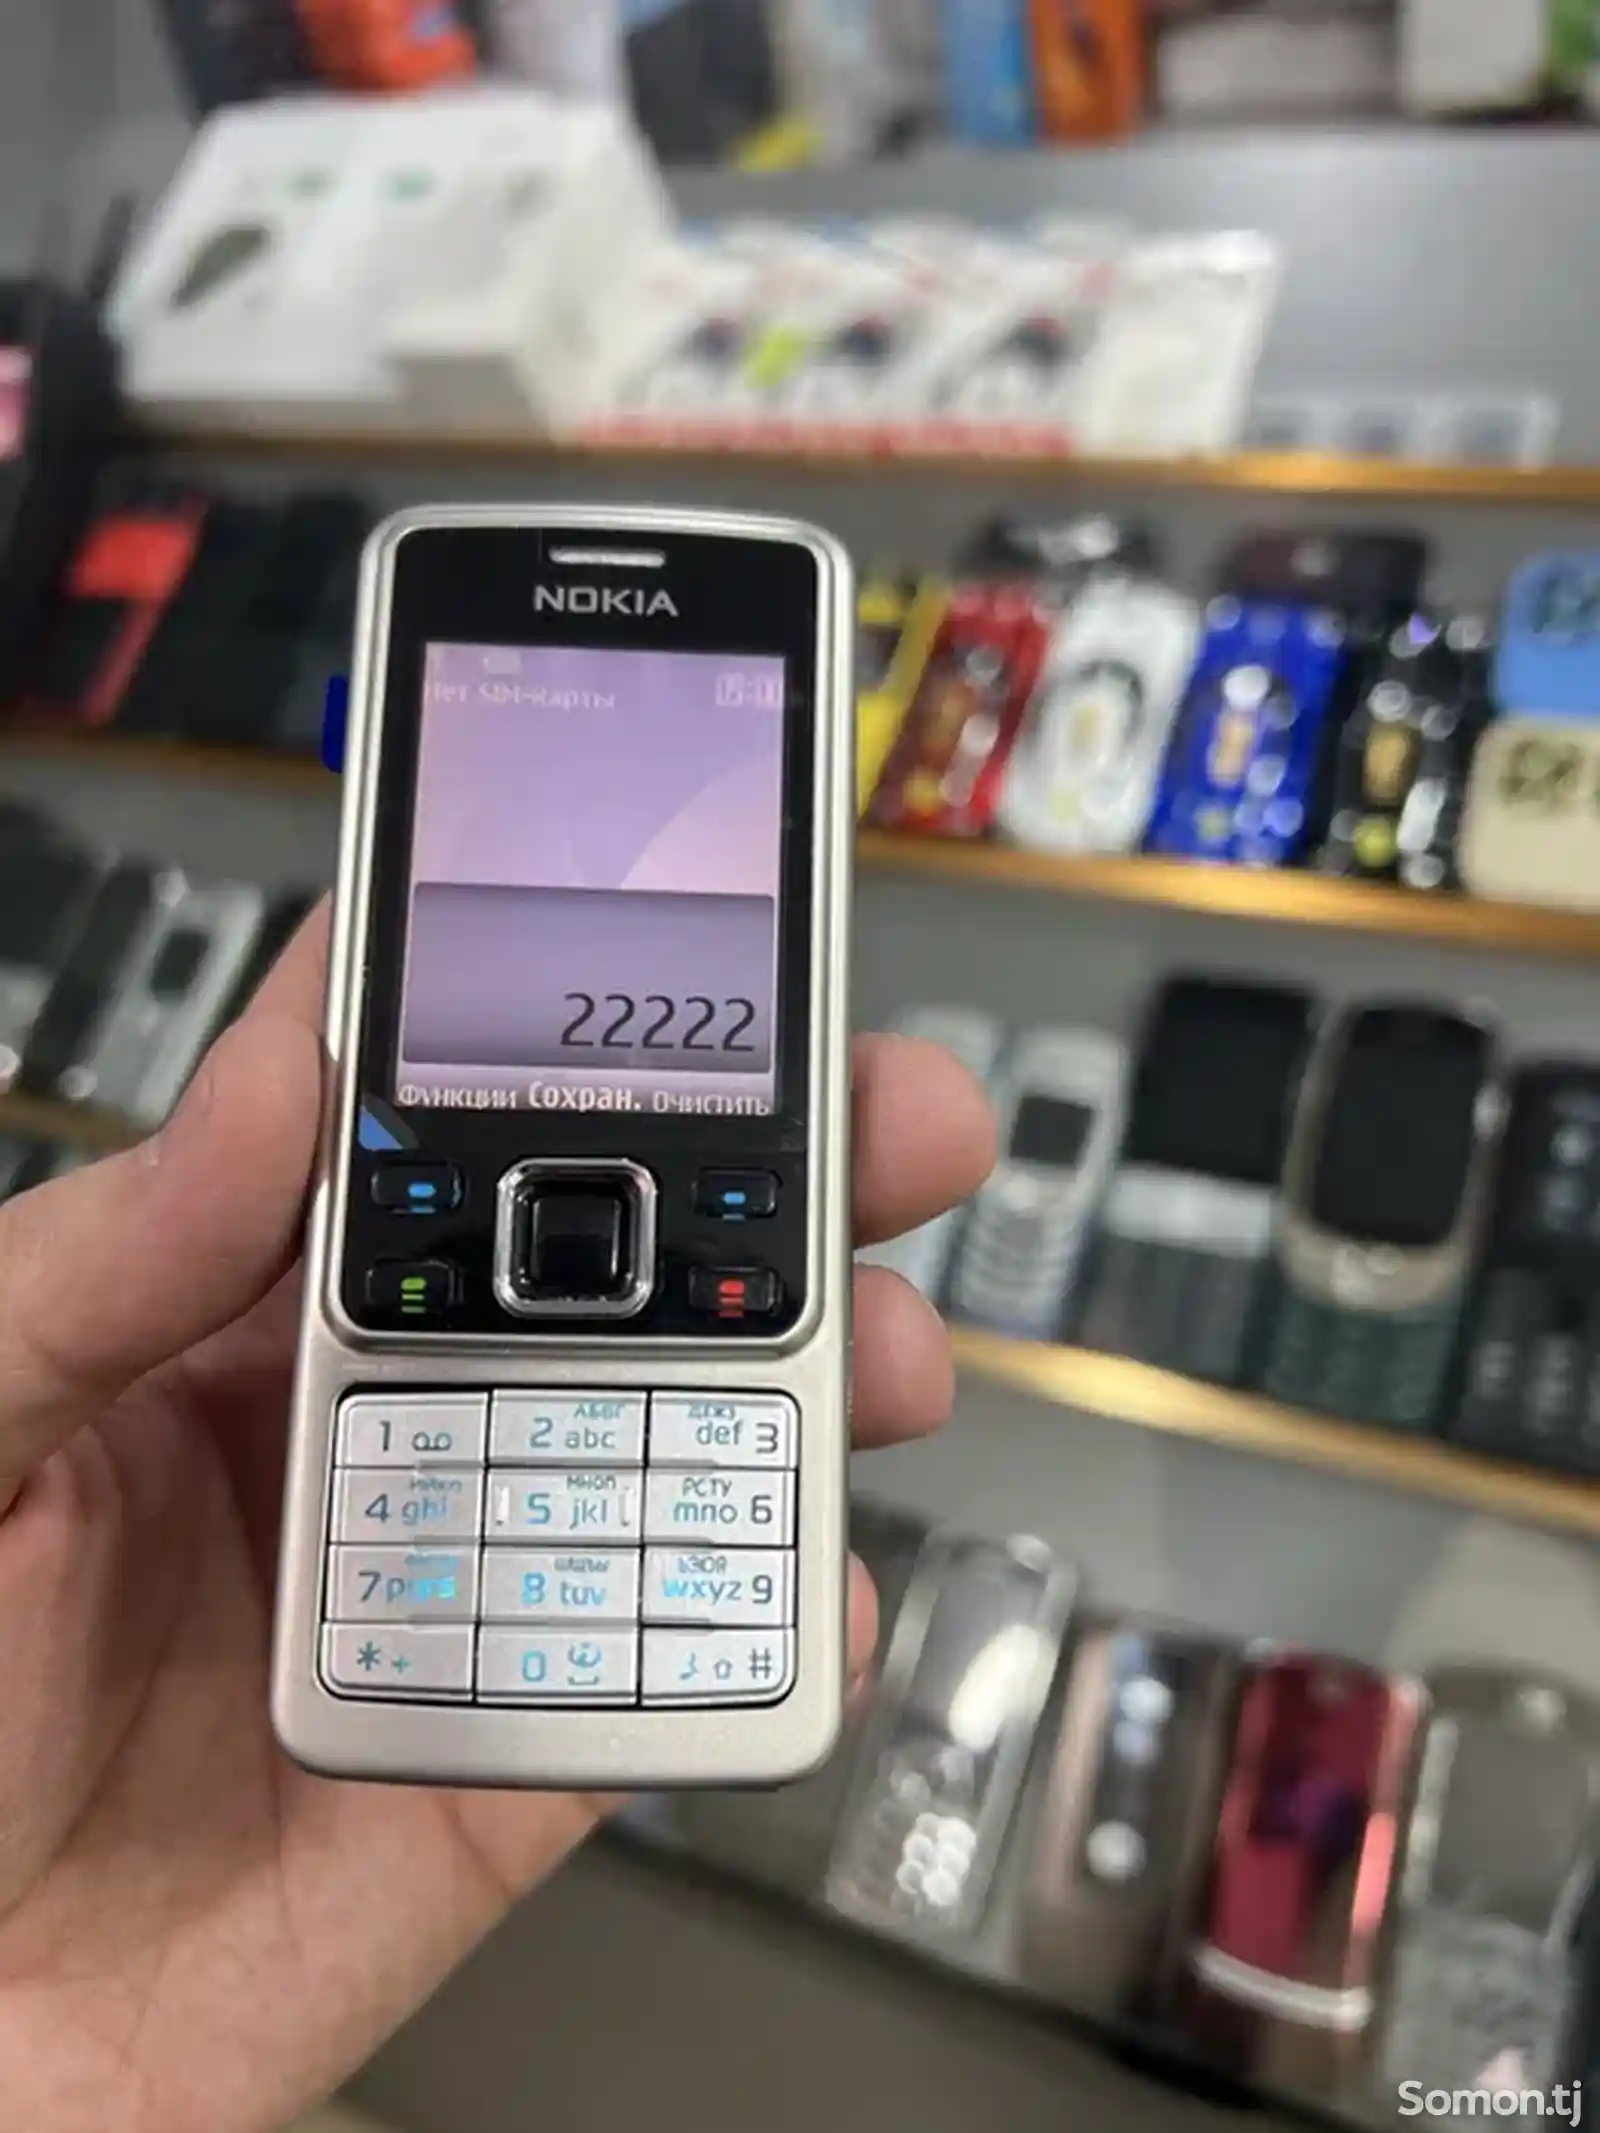 Nokia 6300-3